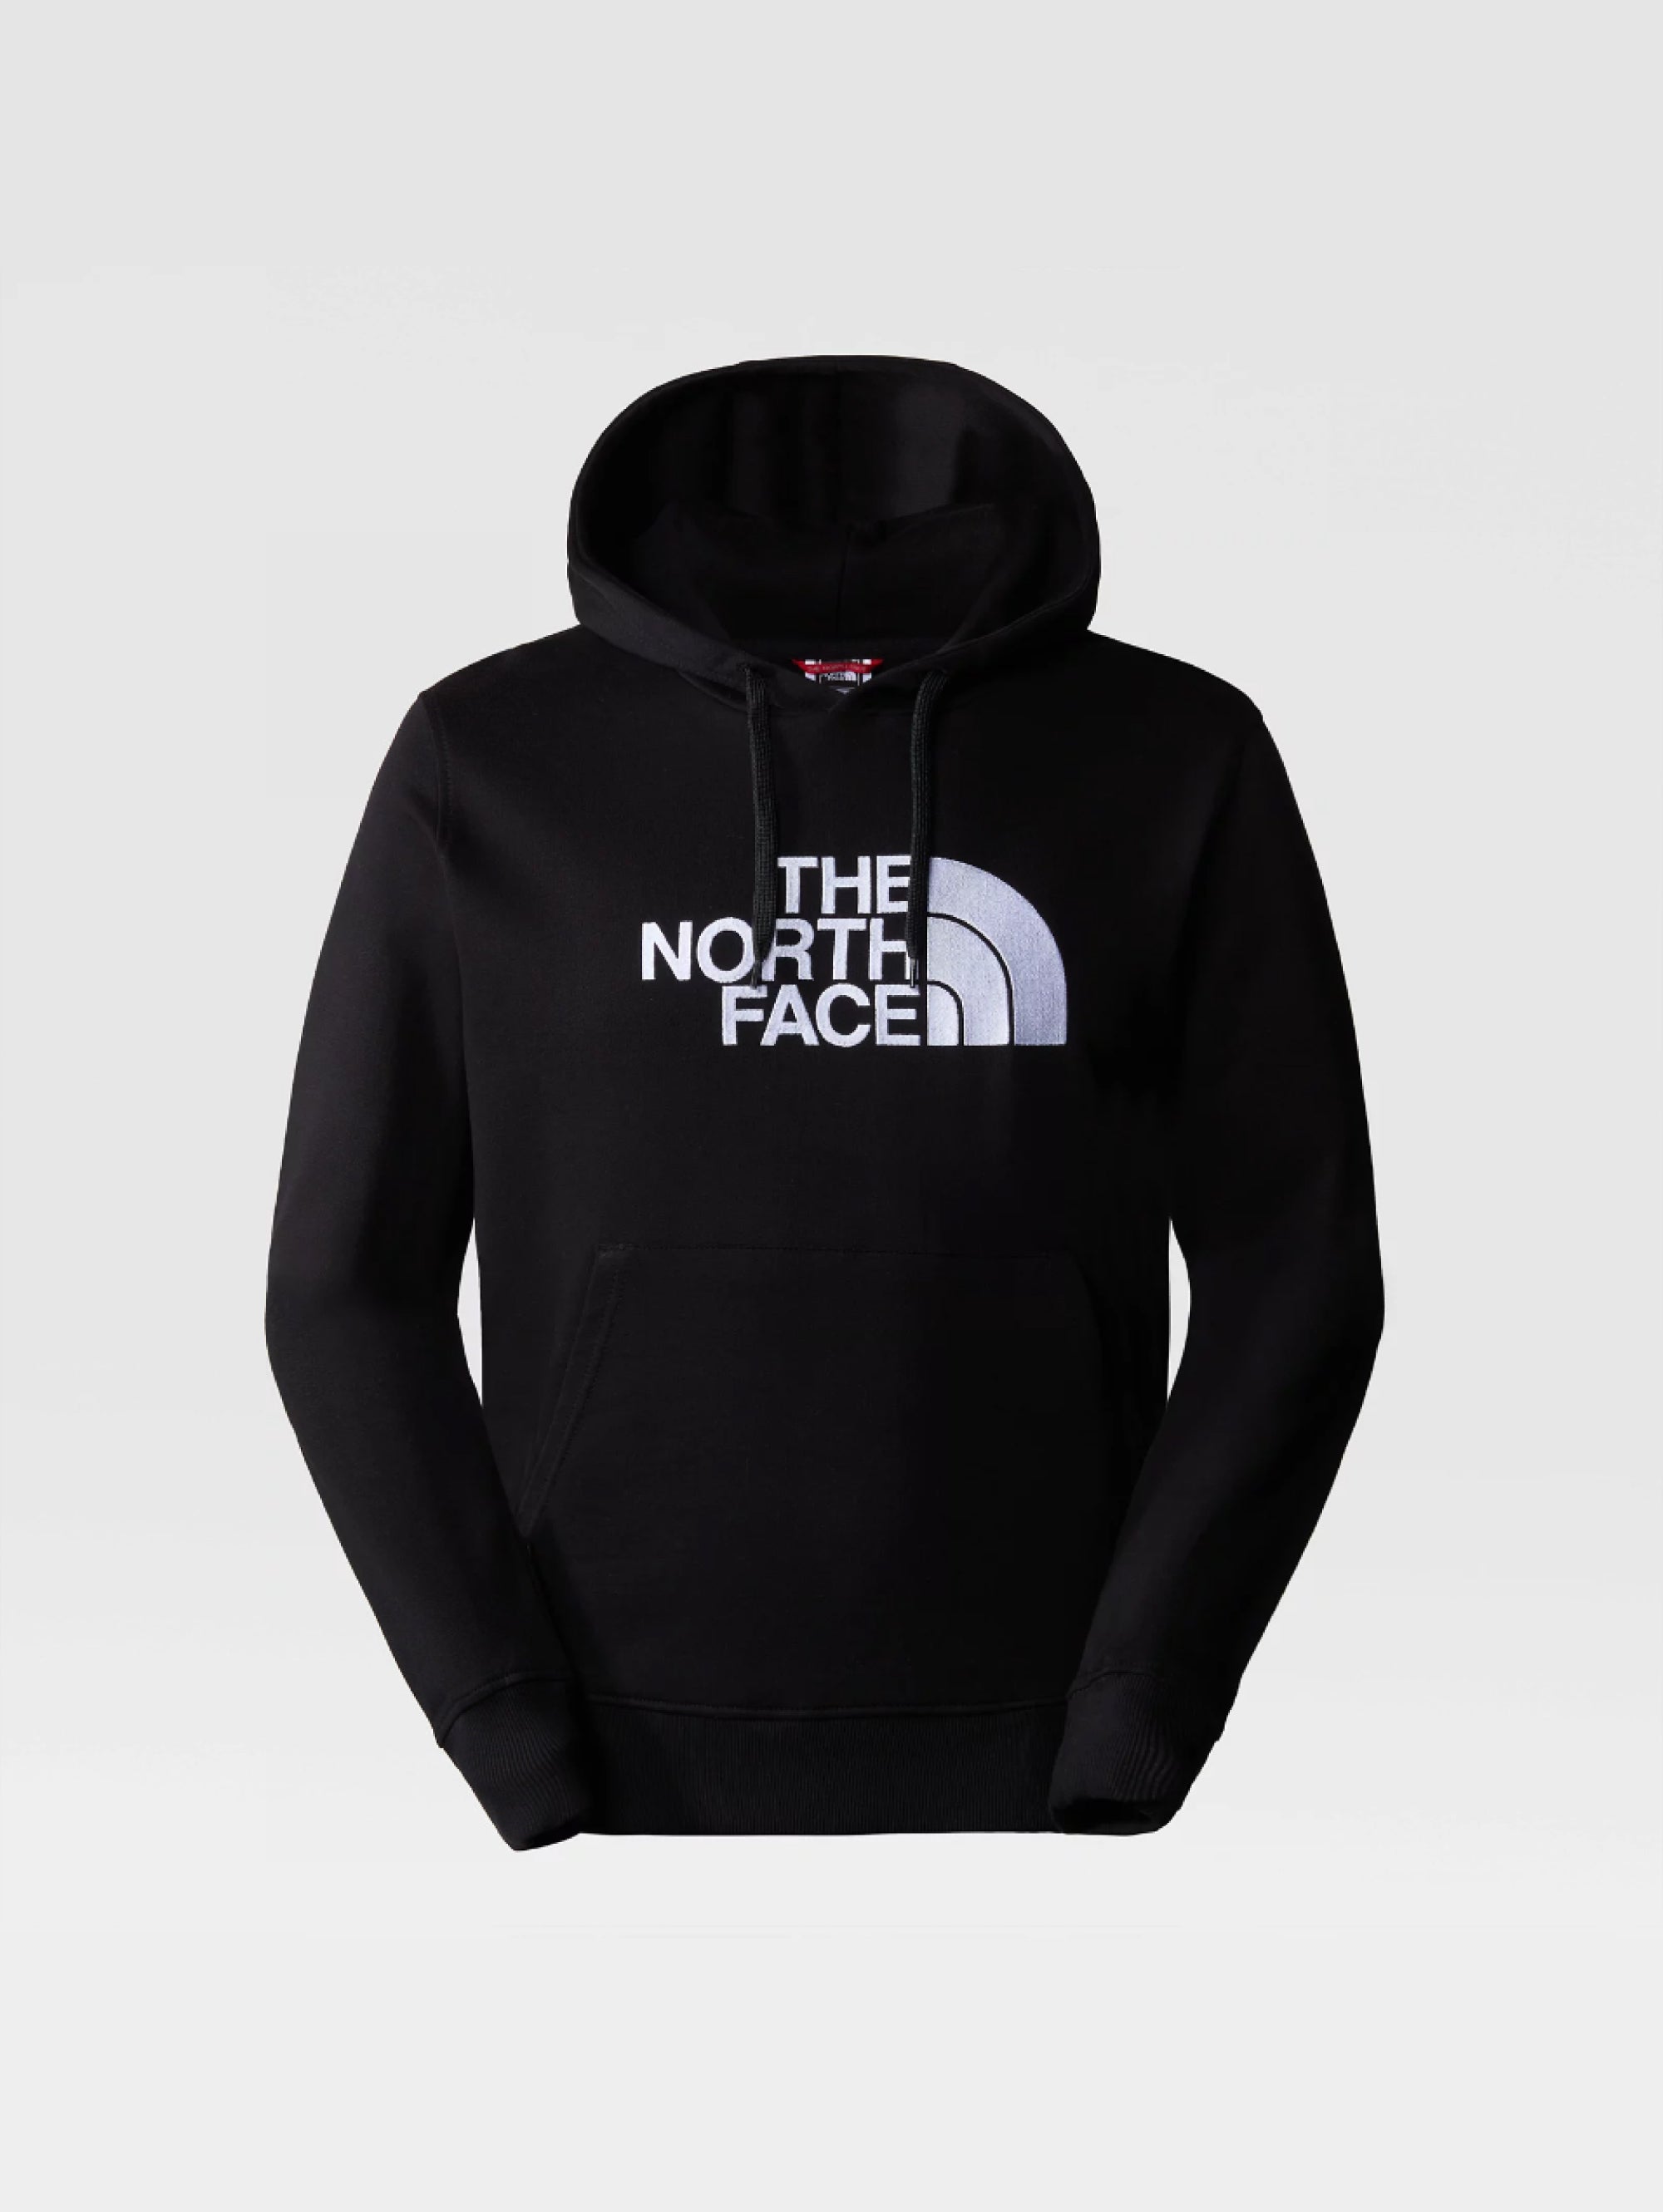 THE NORTH FACE-Felpa con Cappuccio e Logo Ricamato Nero-TRYME Shop